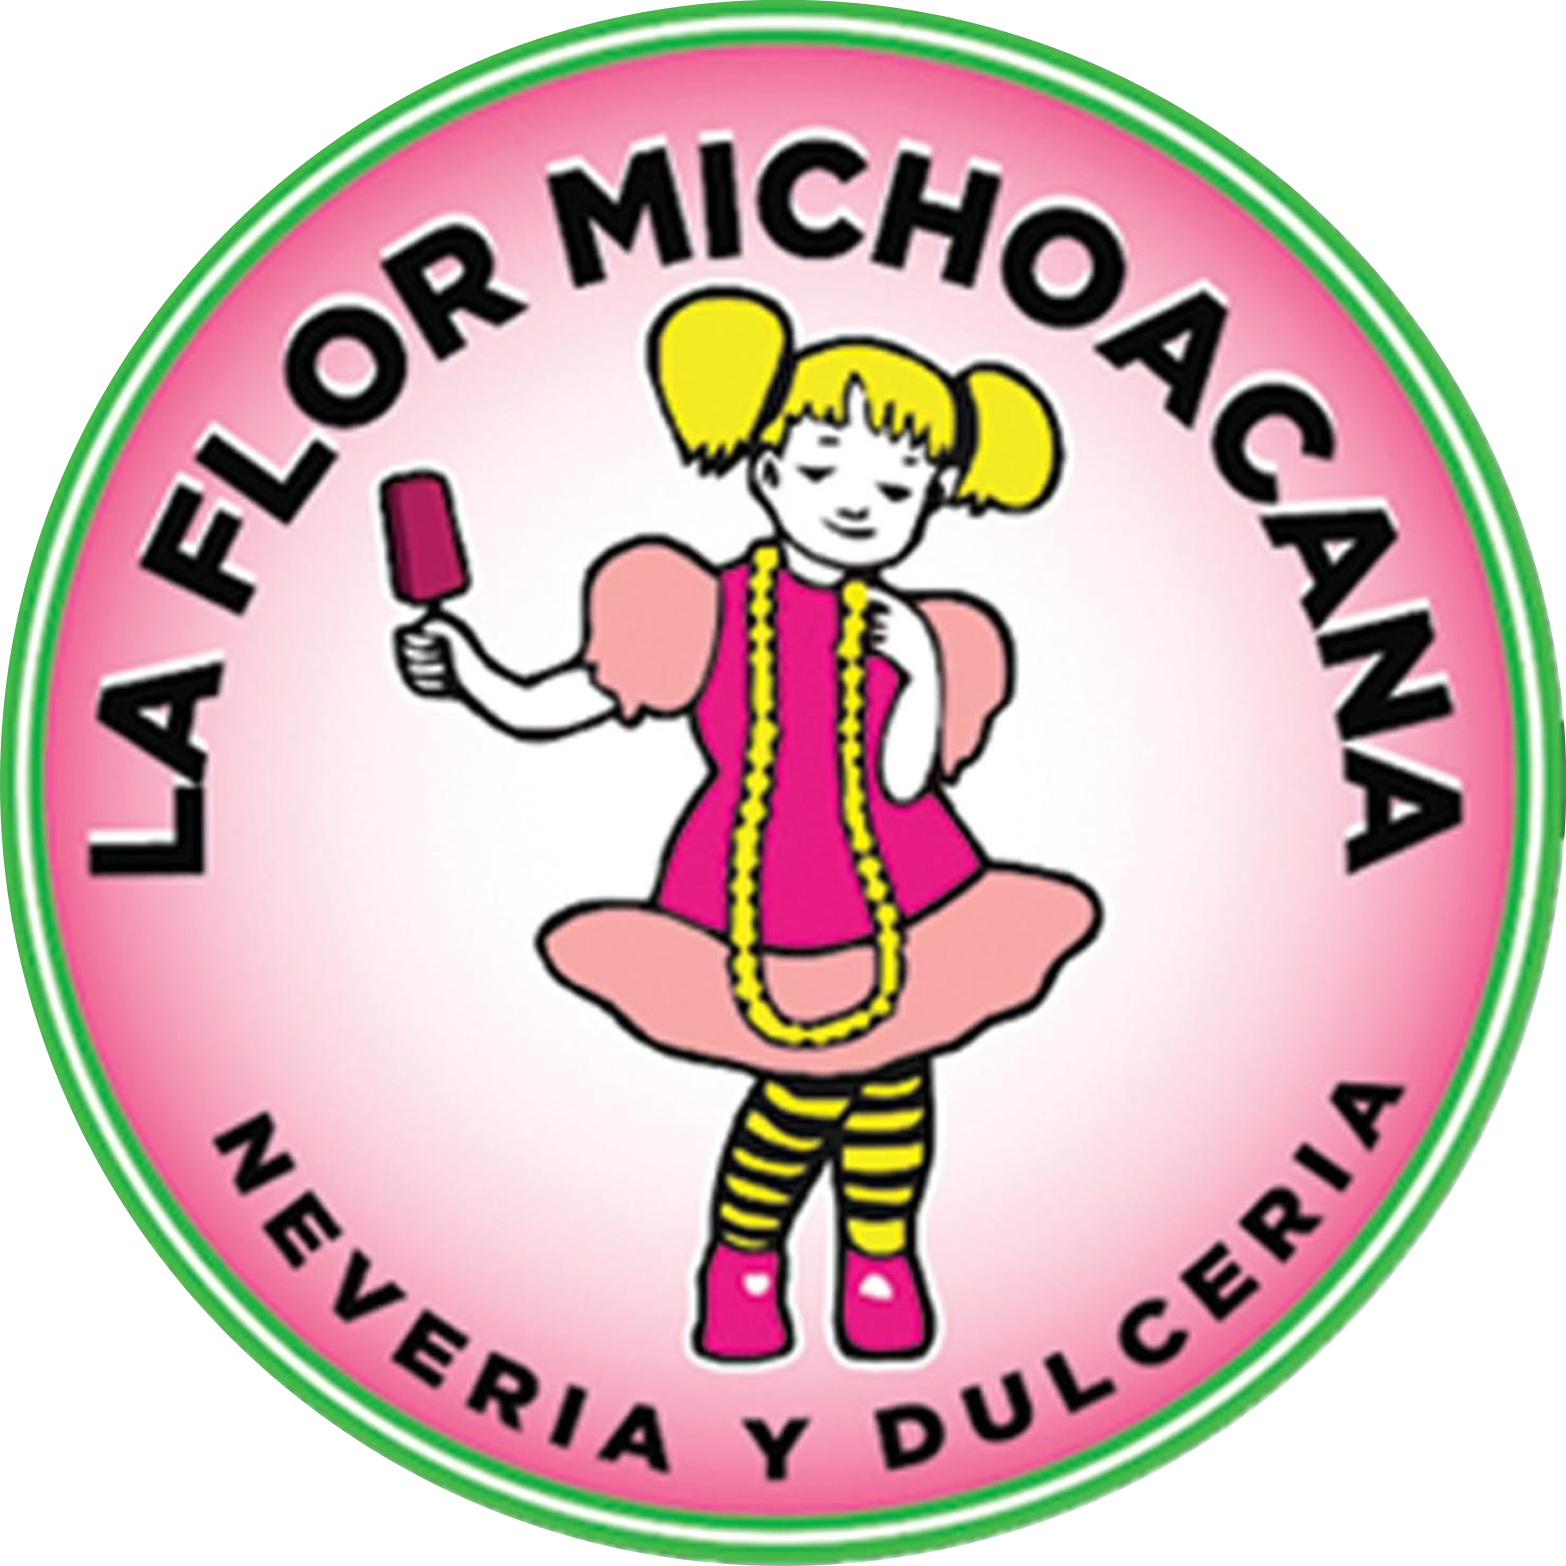 La flor michoacana inc